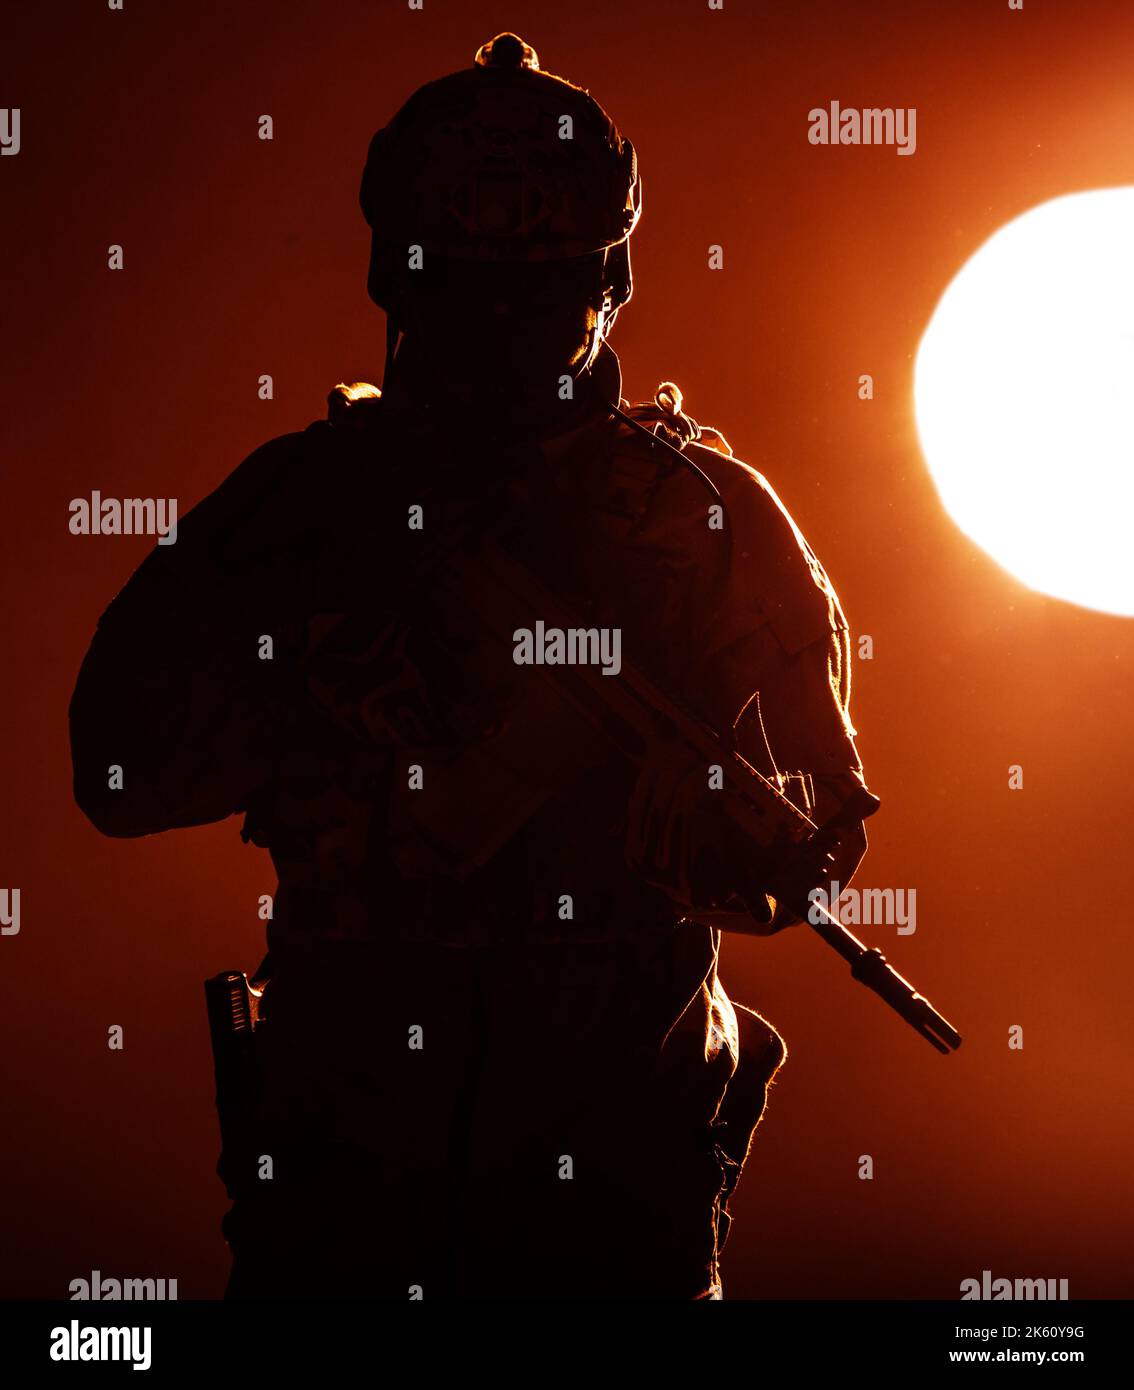 Armeesoldat in Schutzkampfuniform mit Special Operations Forces Combat Assault Rifle, das bei Sonnenuntergang in der Abendsonne eingesetzt wird Stockfoto